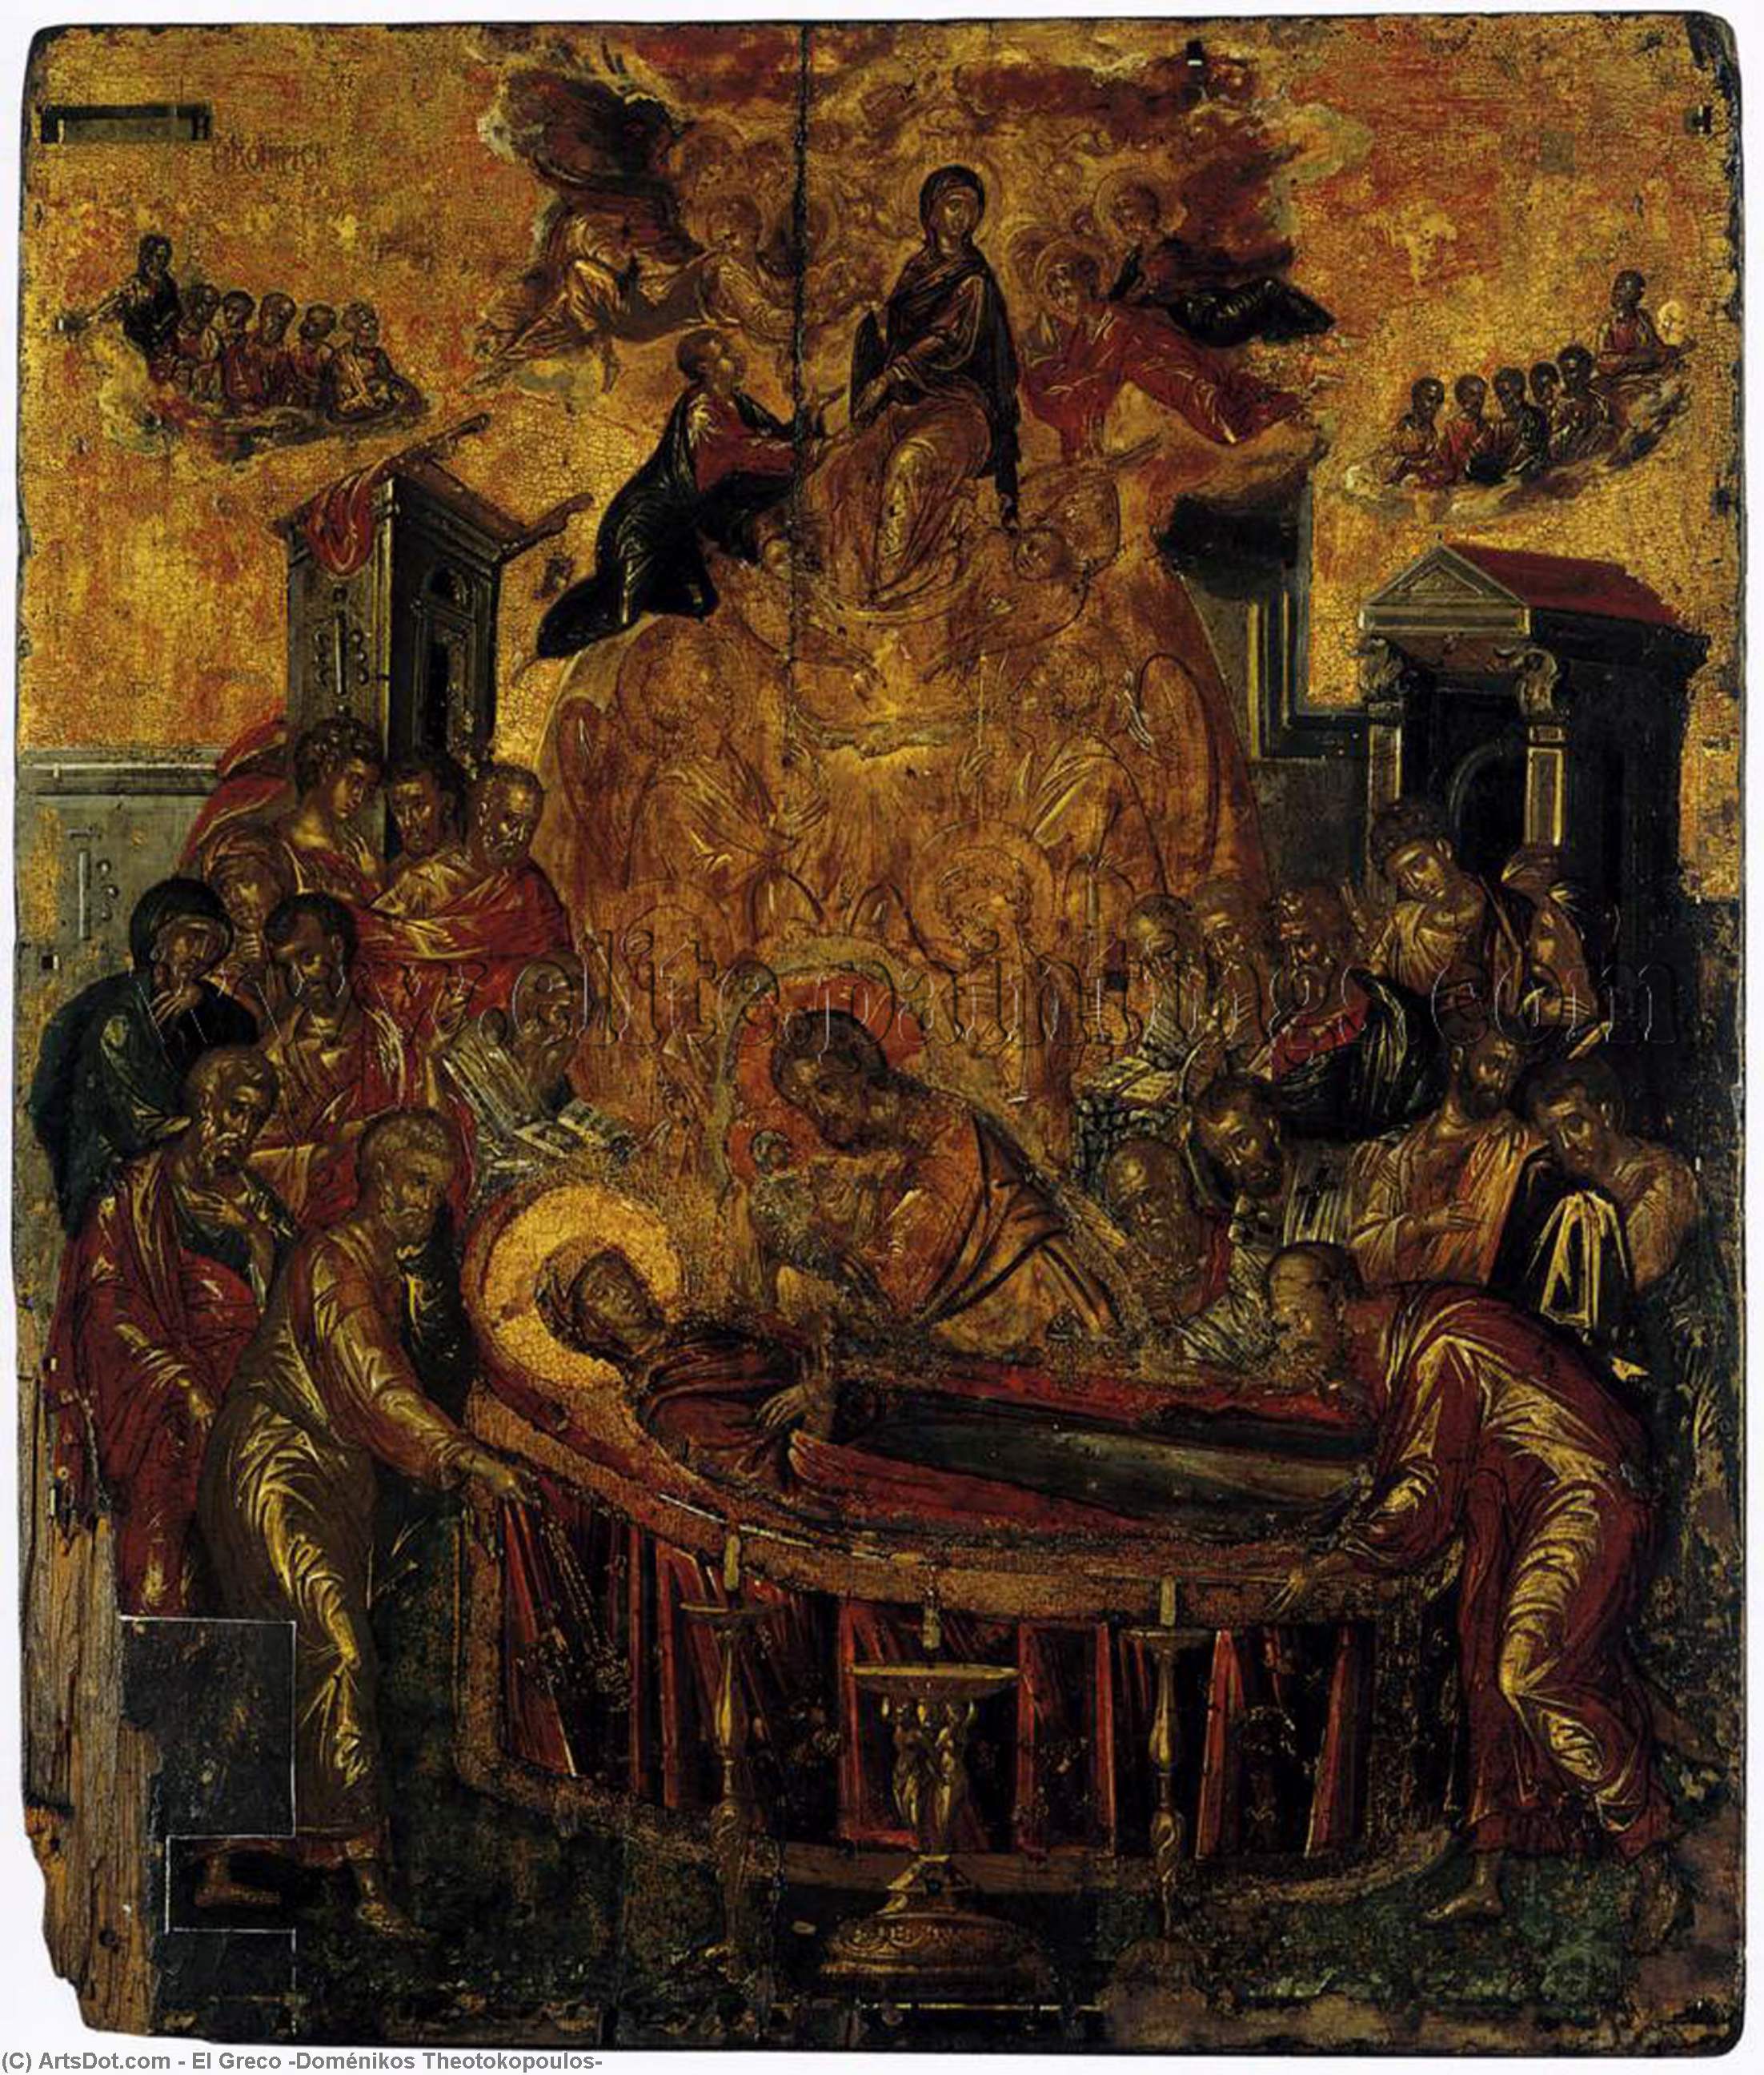 WikiOO.org - Encyclopedia of Fine Arts - Maleri, Artwork El Greco (Doménikos Theotokopoulos) - The Dormition of the Virgin